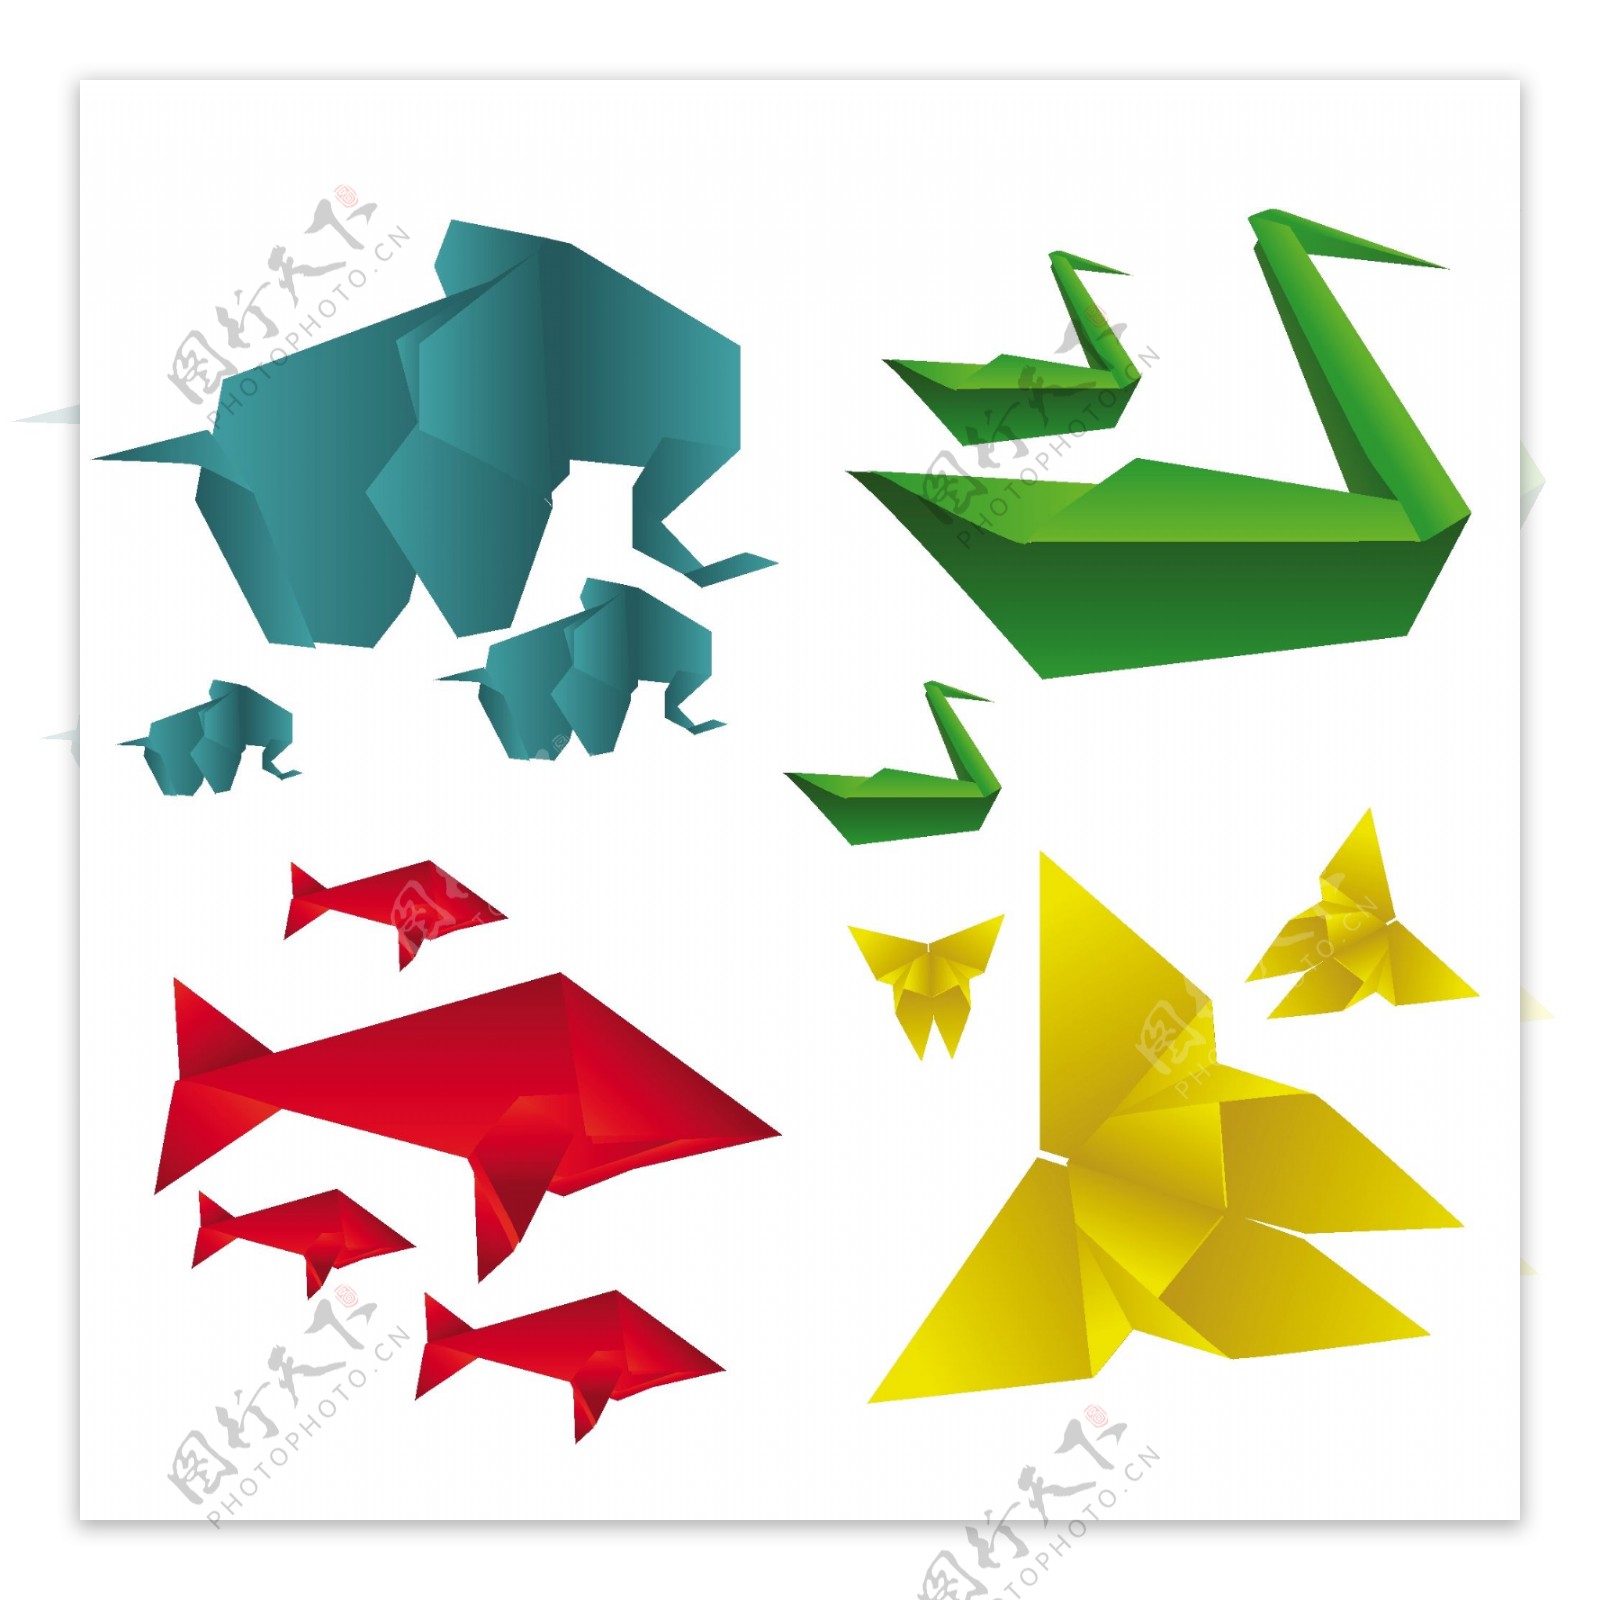 各种折纸动物设计矢量素材01